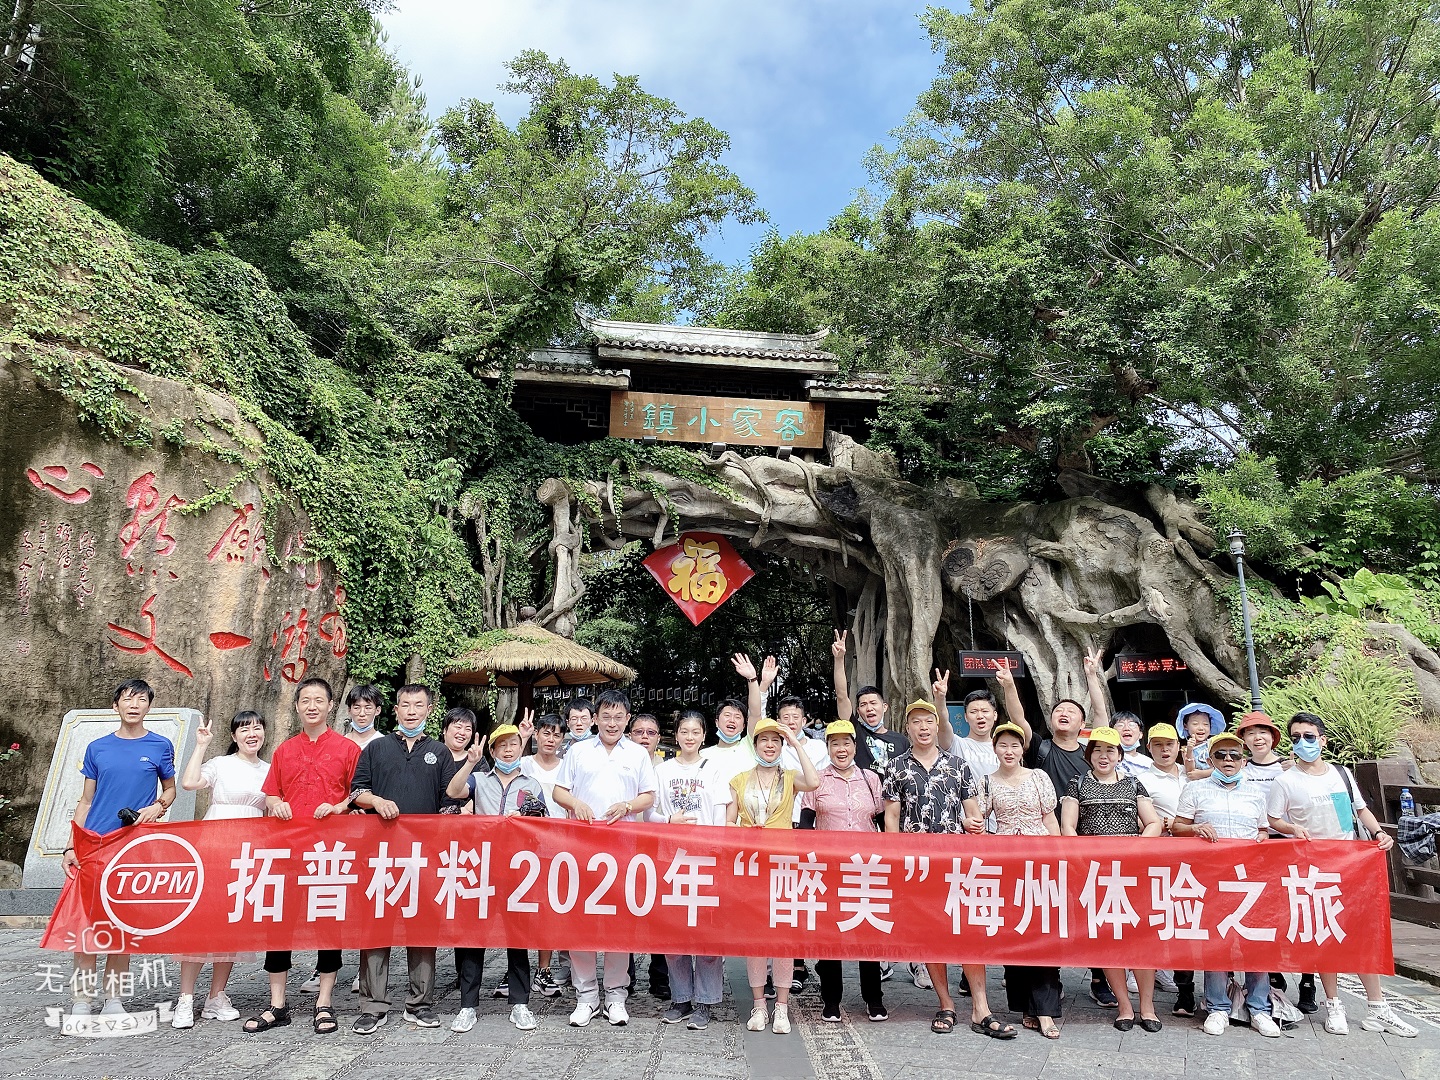 中国有限公司官网材料2020年“醉美”梅州之旅团建活动圆满成功